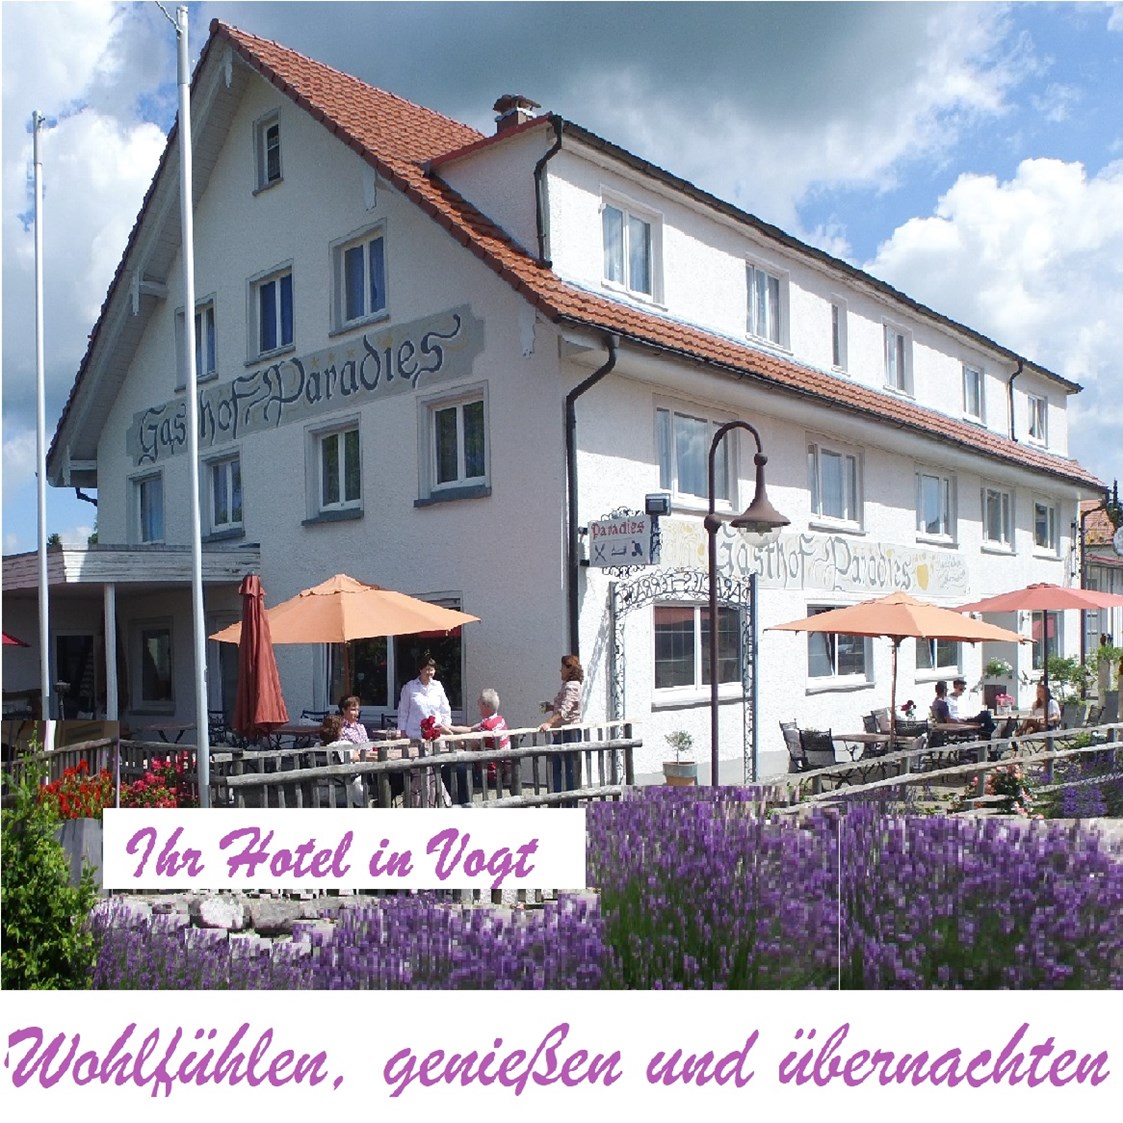 Mountainbikehotel: Wohlfühlen und Genießen im Paradies - Adam & Eva Gasthof Paradies in Vogt mit Hotel und Paradiesfestsaal